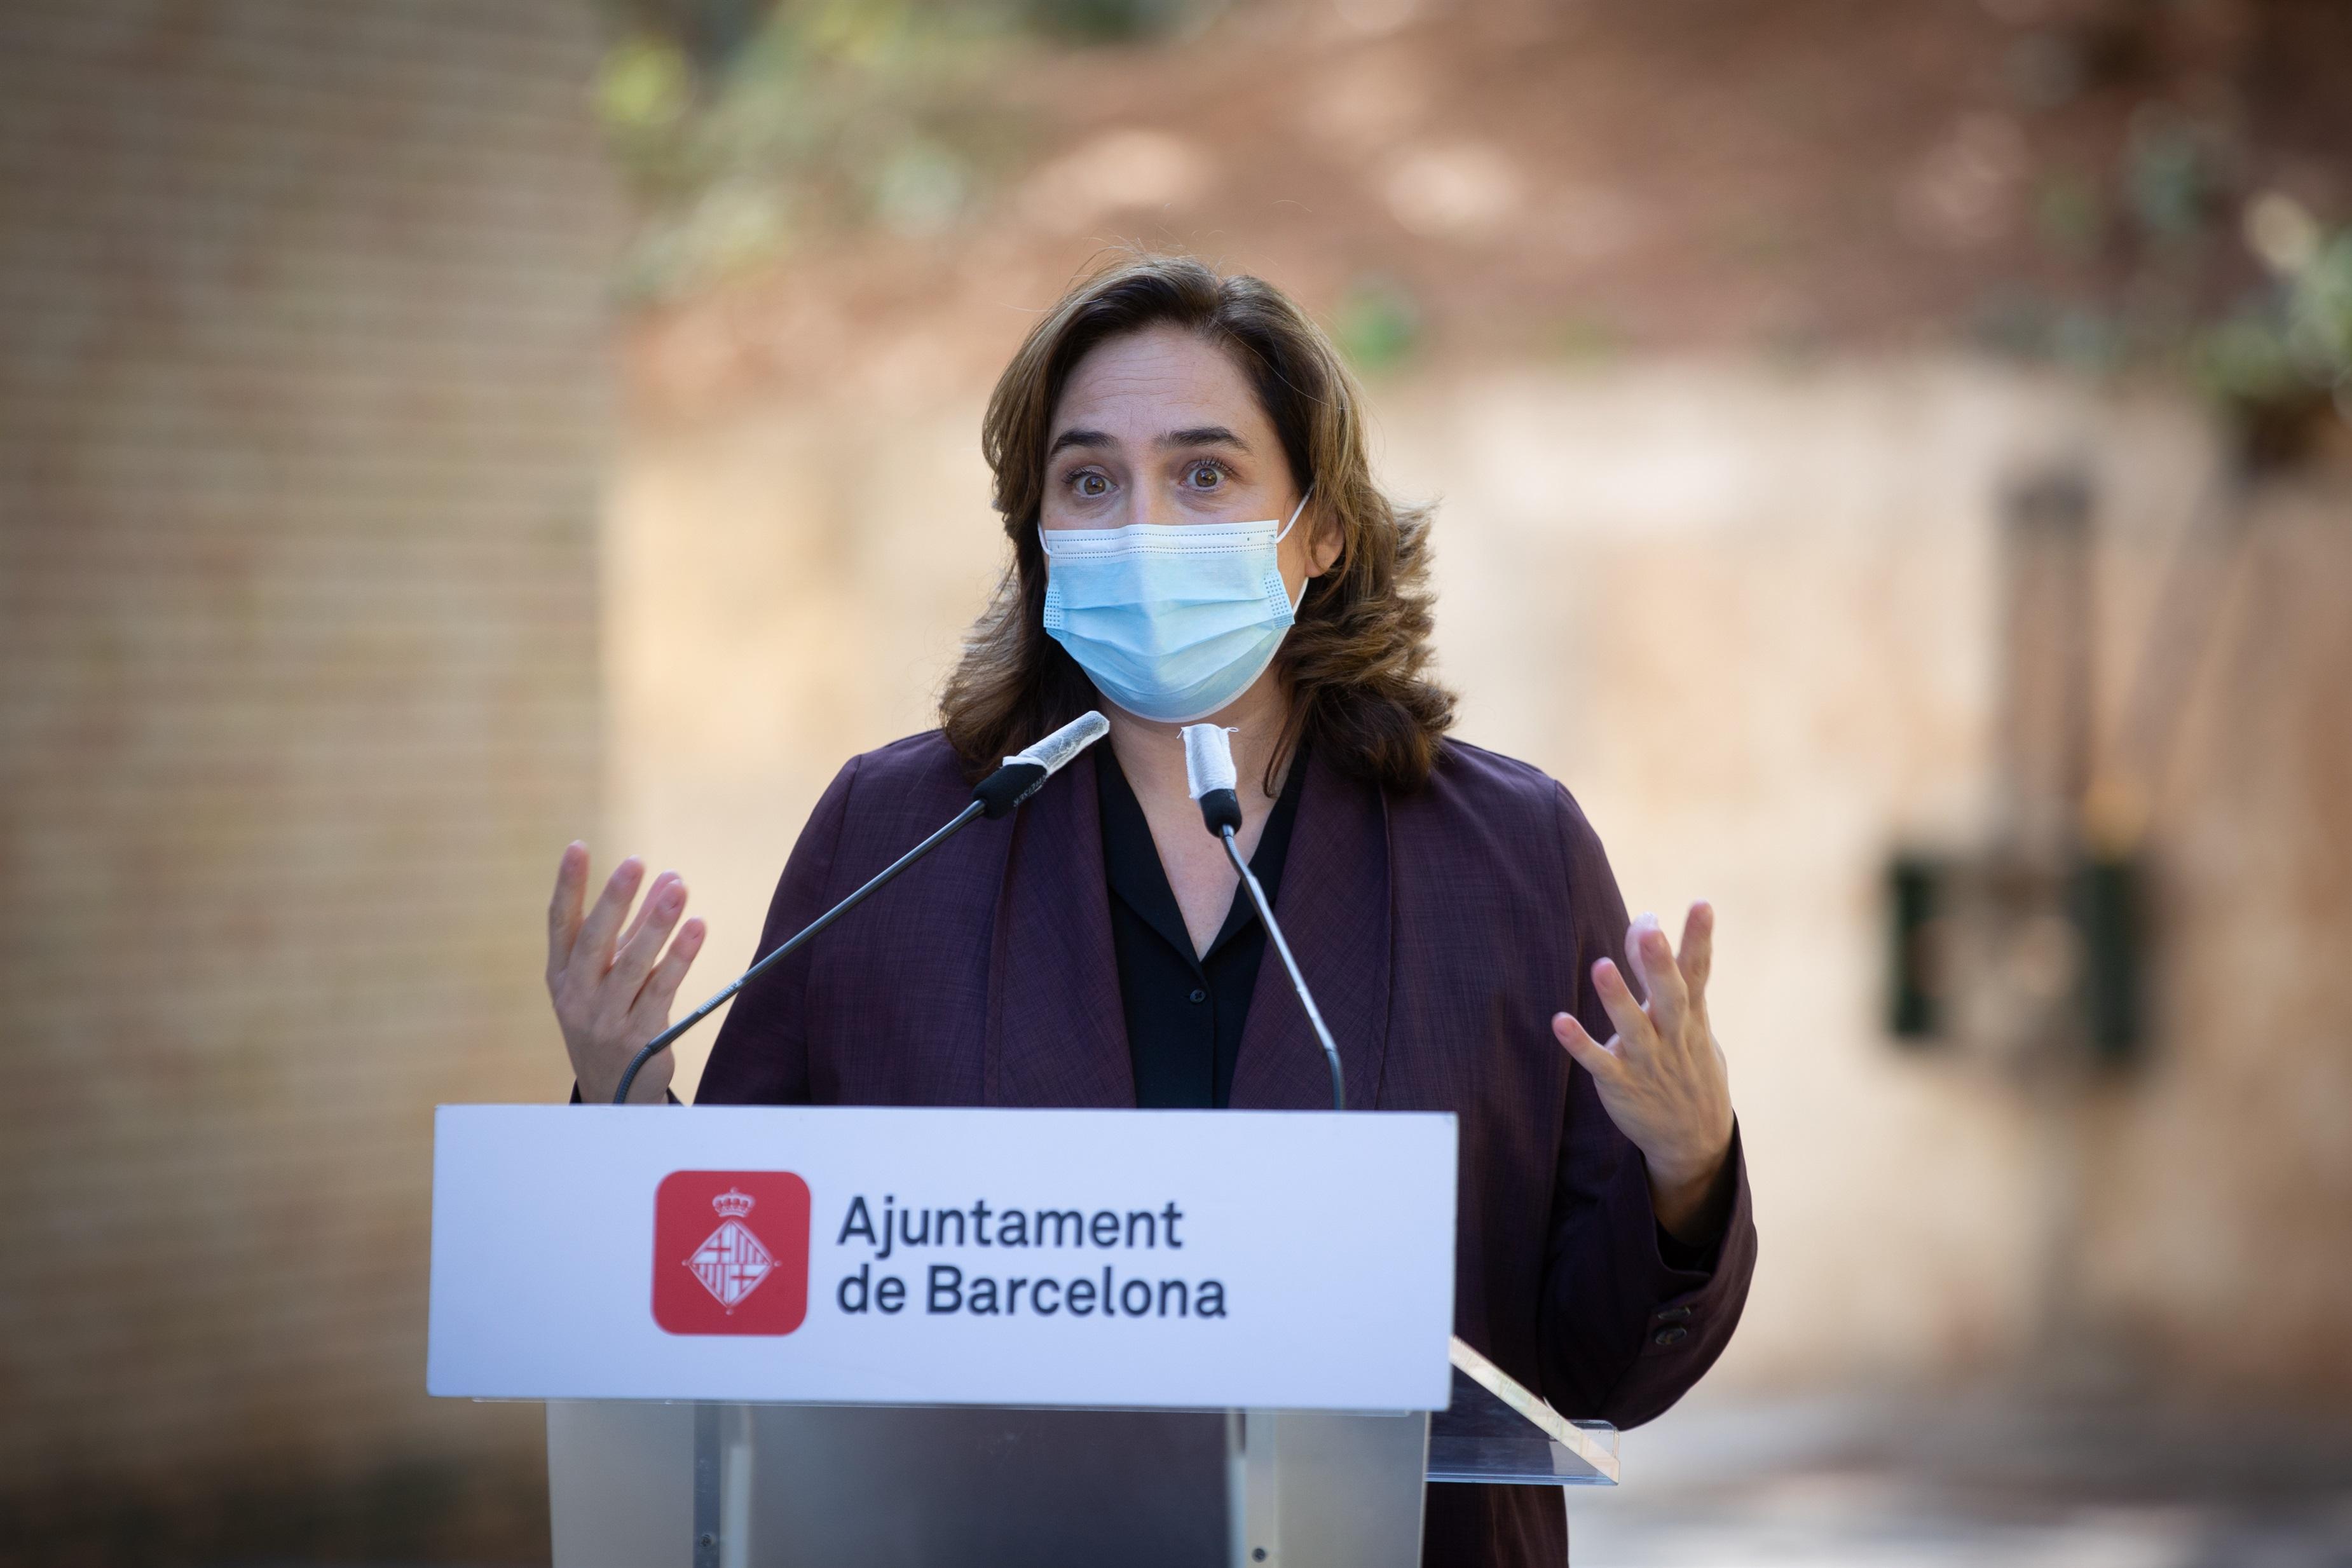 La alcaldesa de Barcelona, Ada Colau, en rueda de prensa para presentar un nuevo equipamiento para mujeres sin hogar.